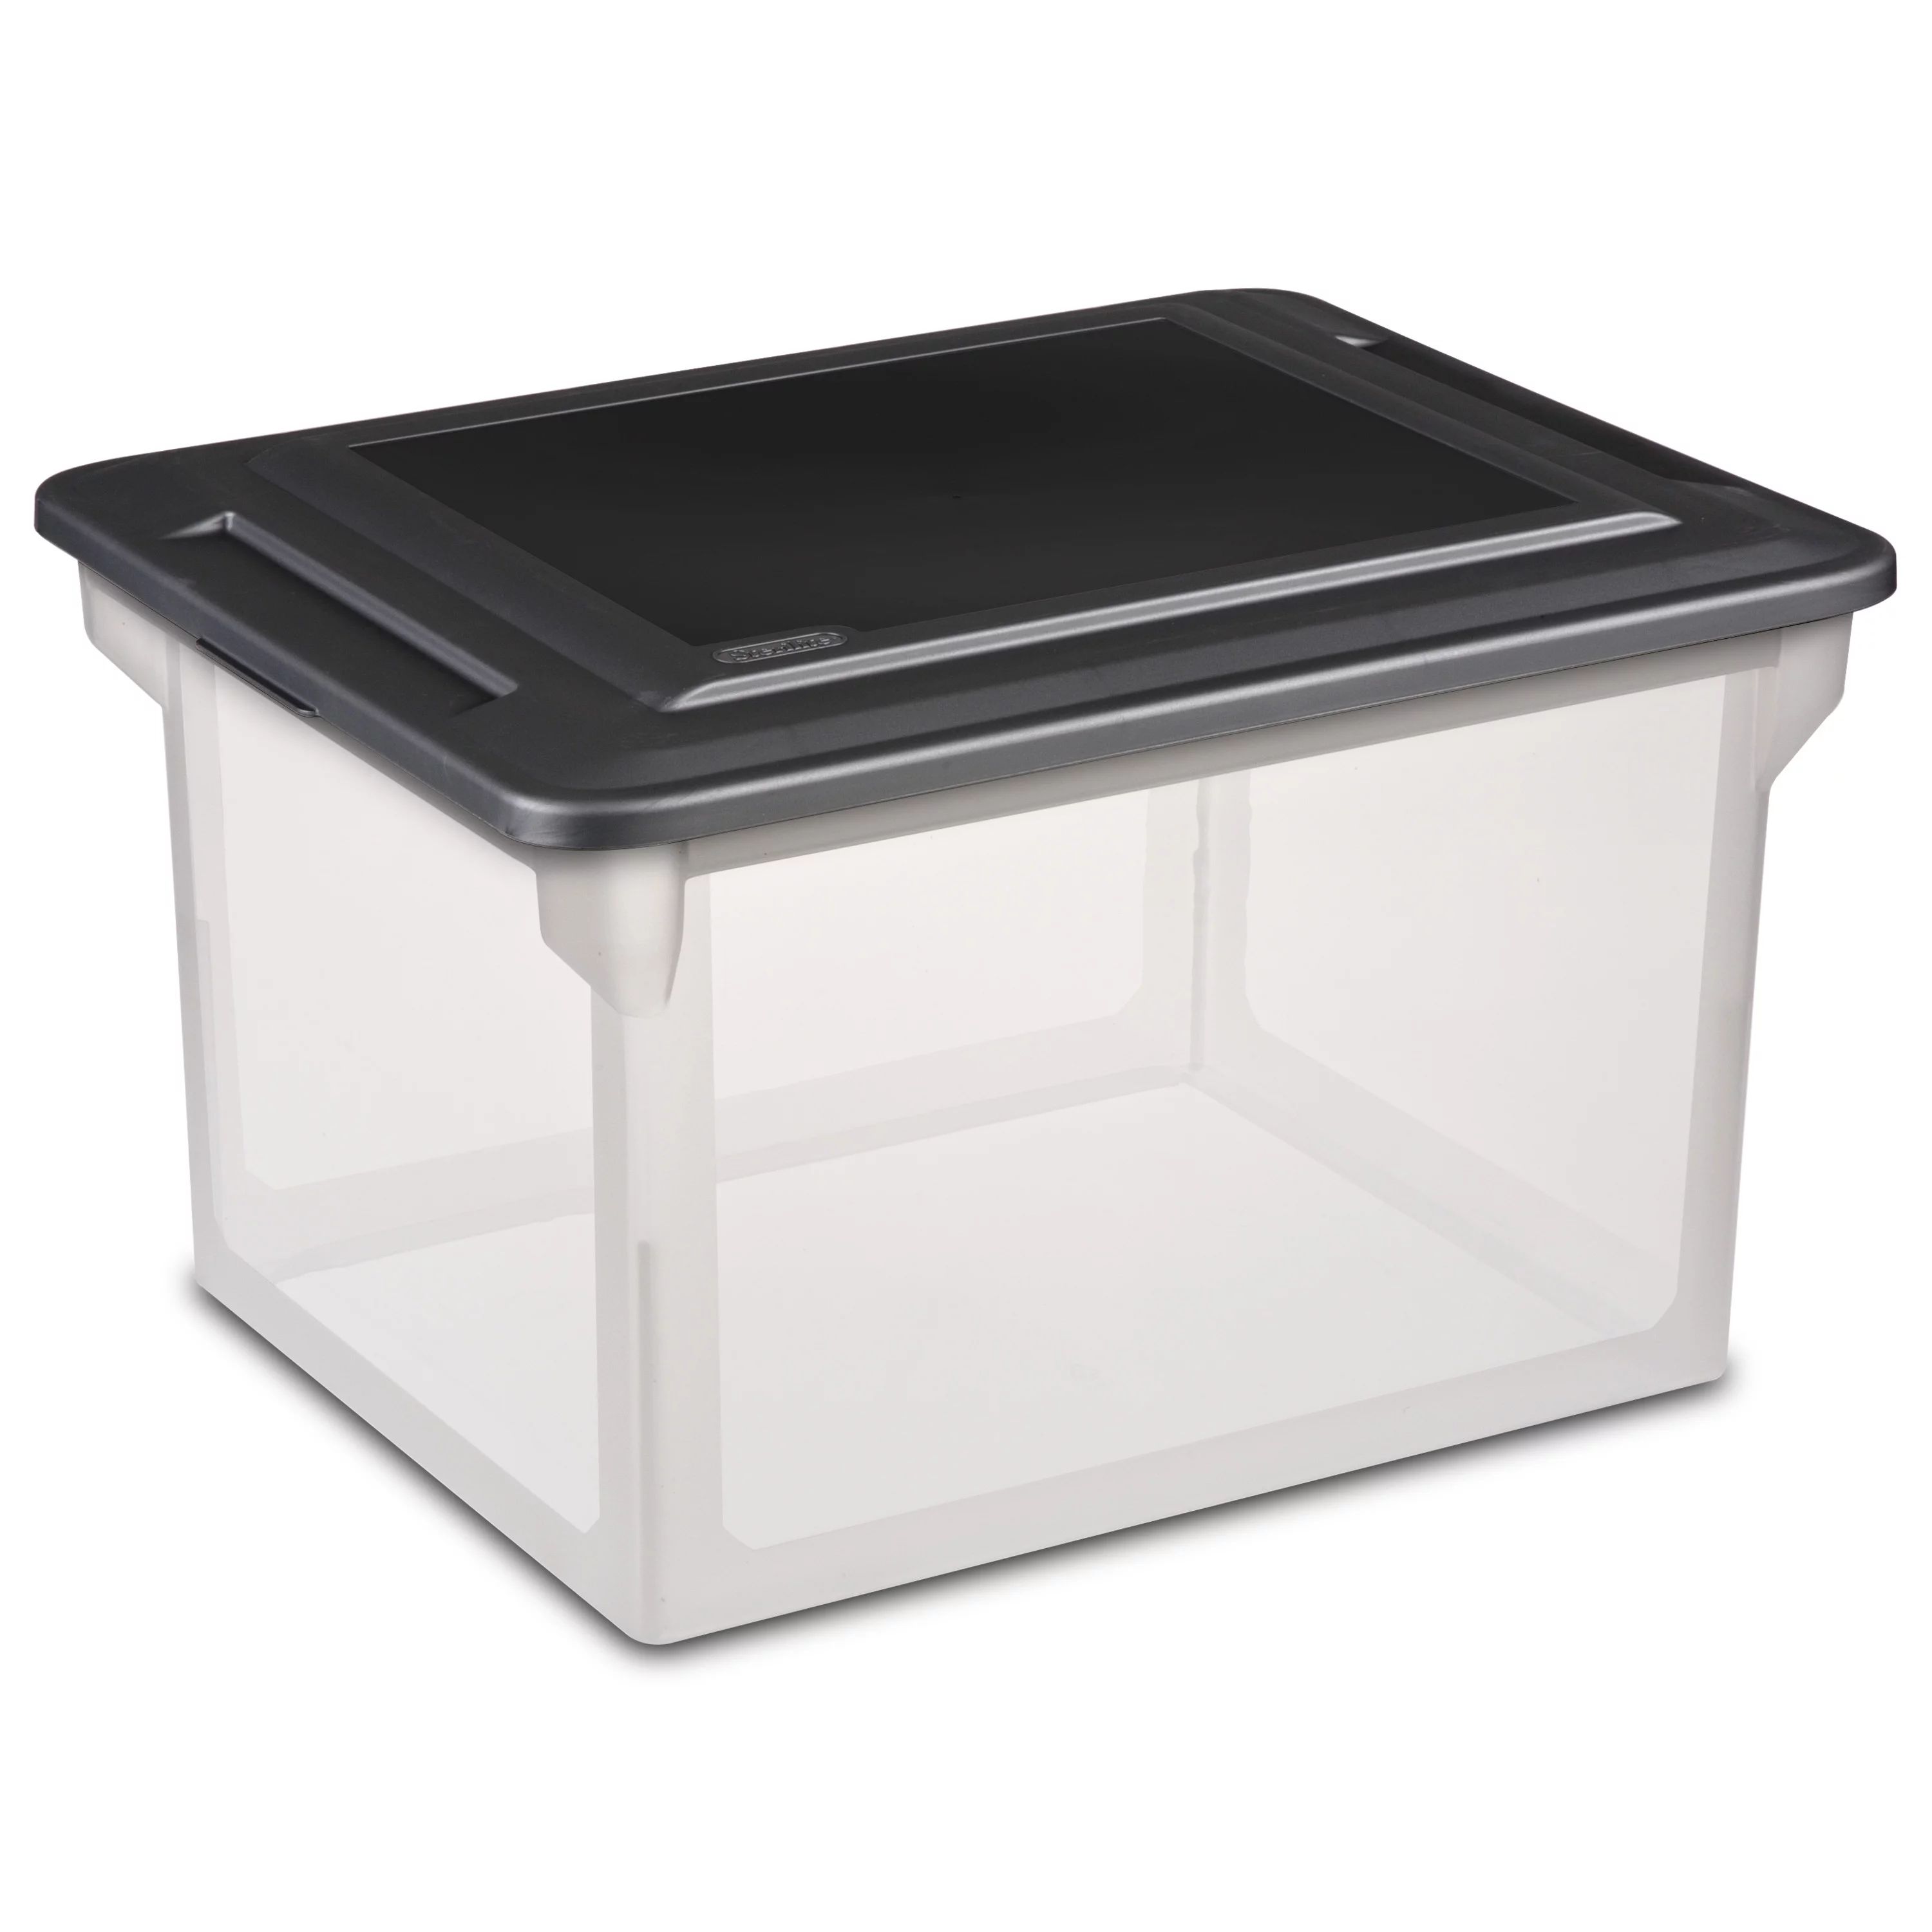 Sterilite Plastic Storage Bin/ File Box, 18 1/2" L x 14" W x 11" H, Black | Walmart (US)